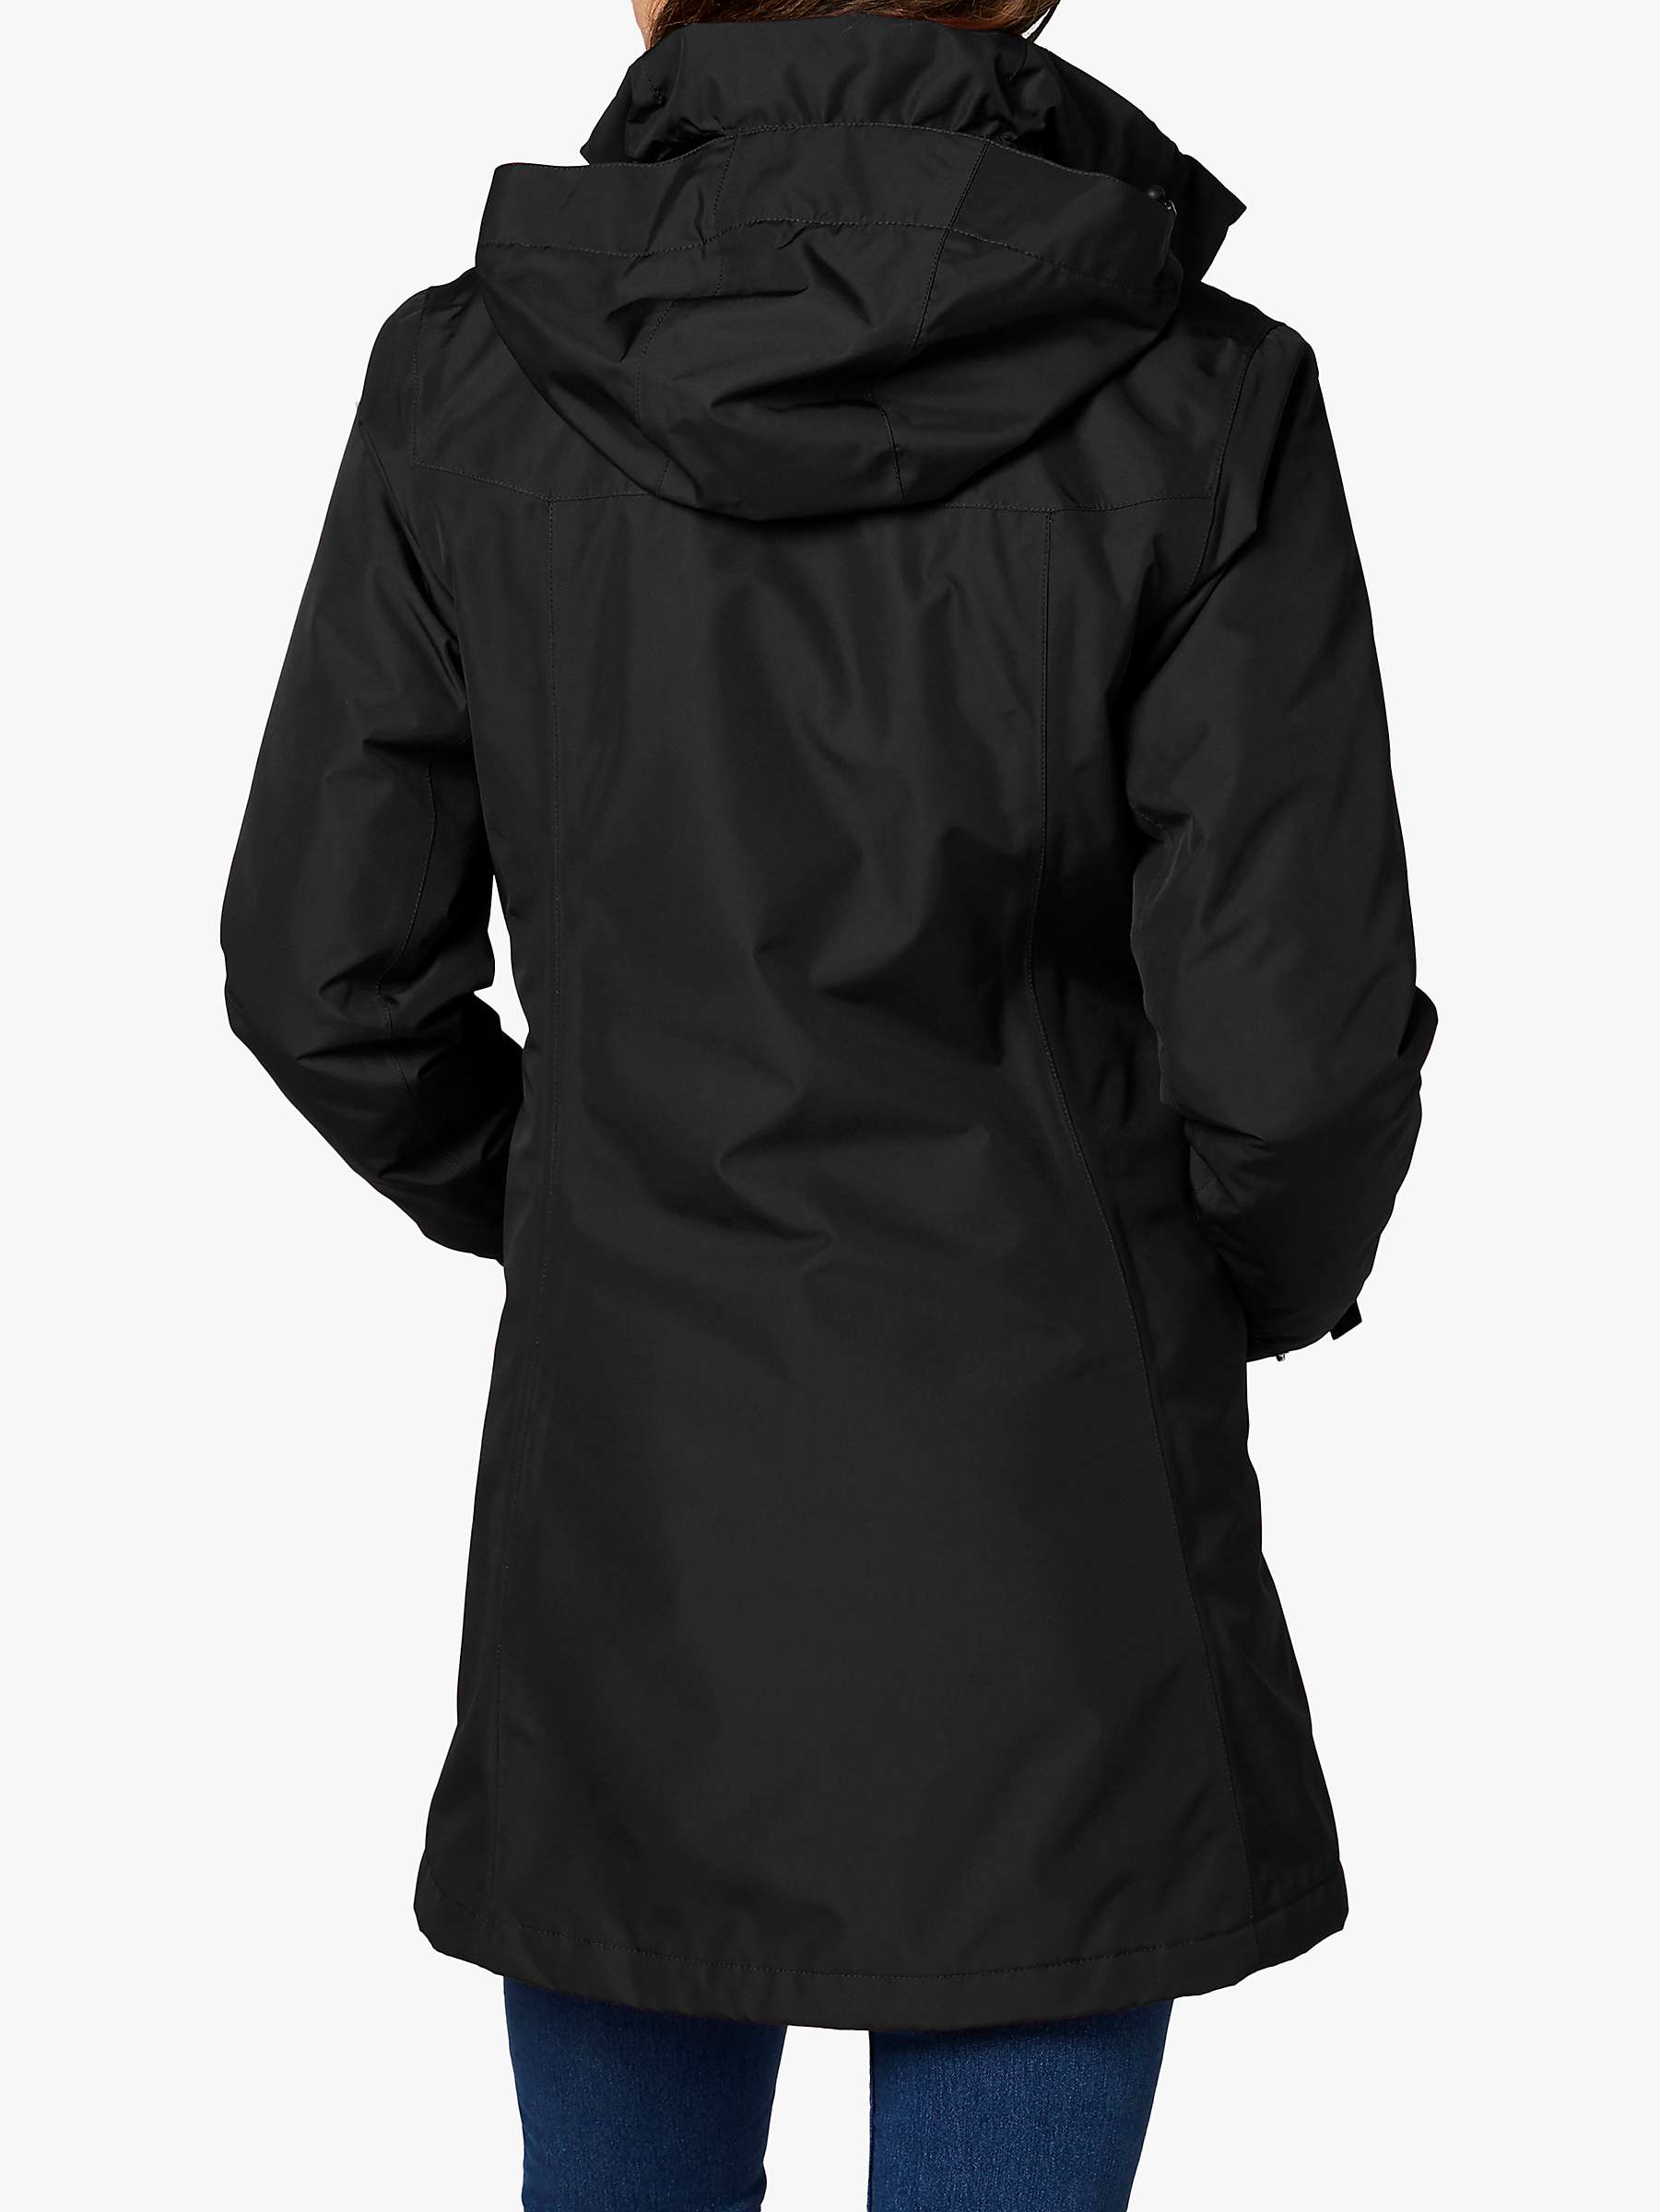 Buy Helly Hansen Aden Women's Long Waterproof Jacket, Black Online at johnlewis.com